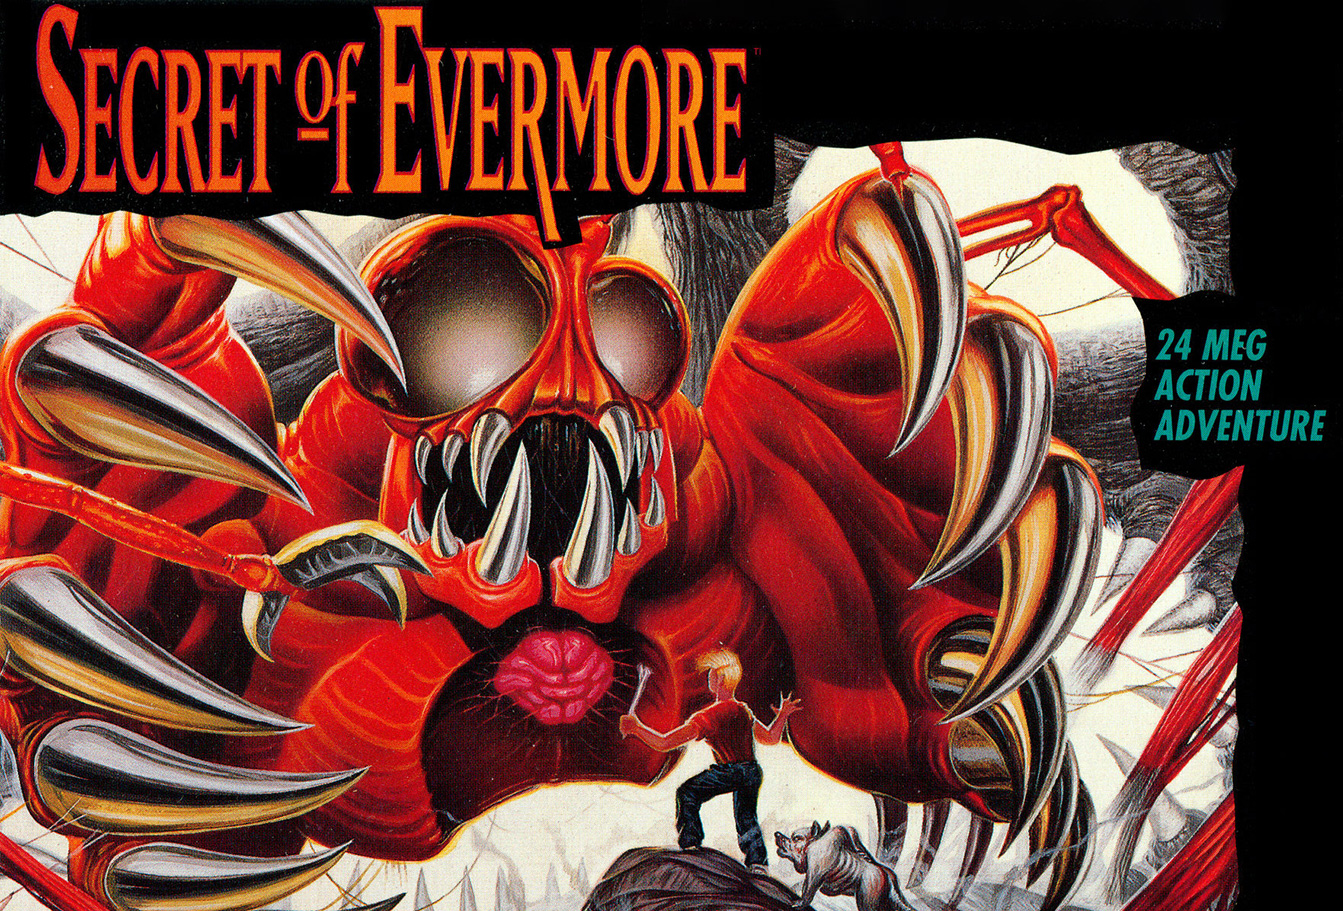 Thraxx fait une forte première impression sur la couverture de Secret of Evermore.